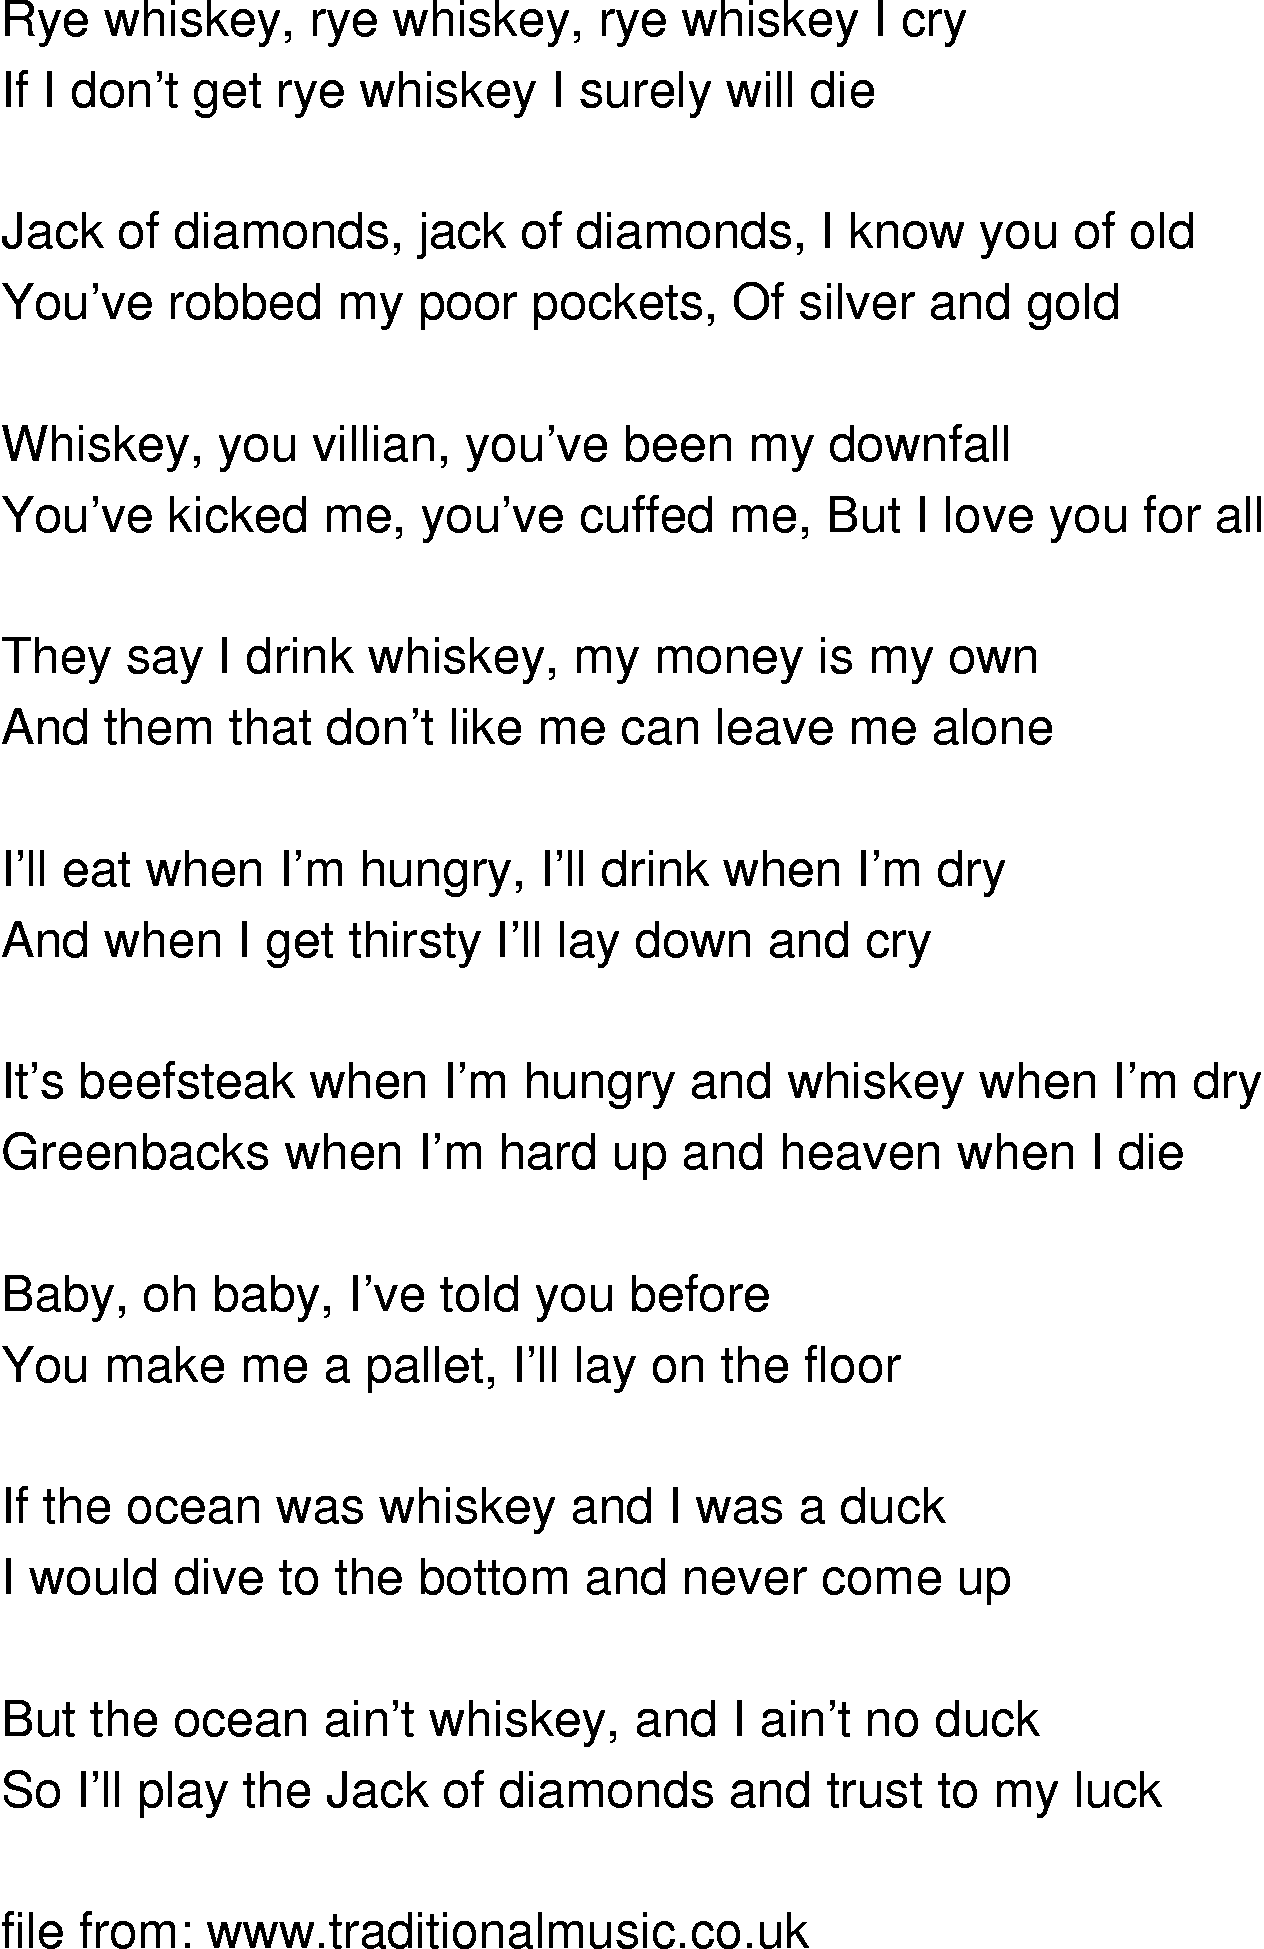 Old-Time (oldtimey) Song Lyrics - rye whiskey